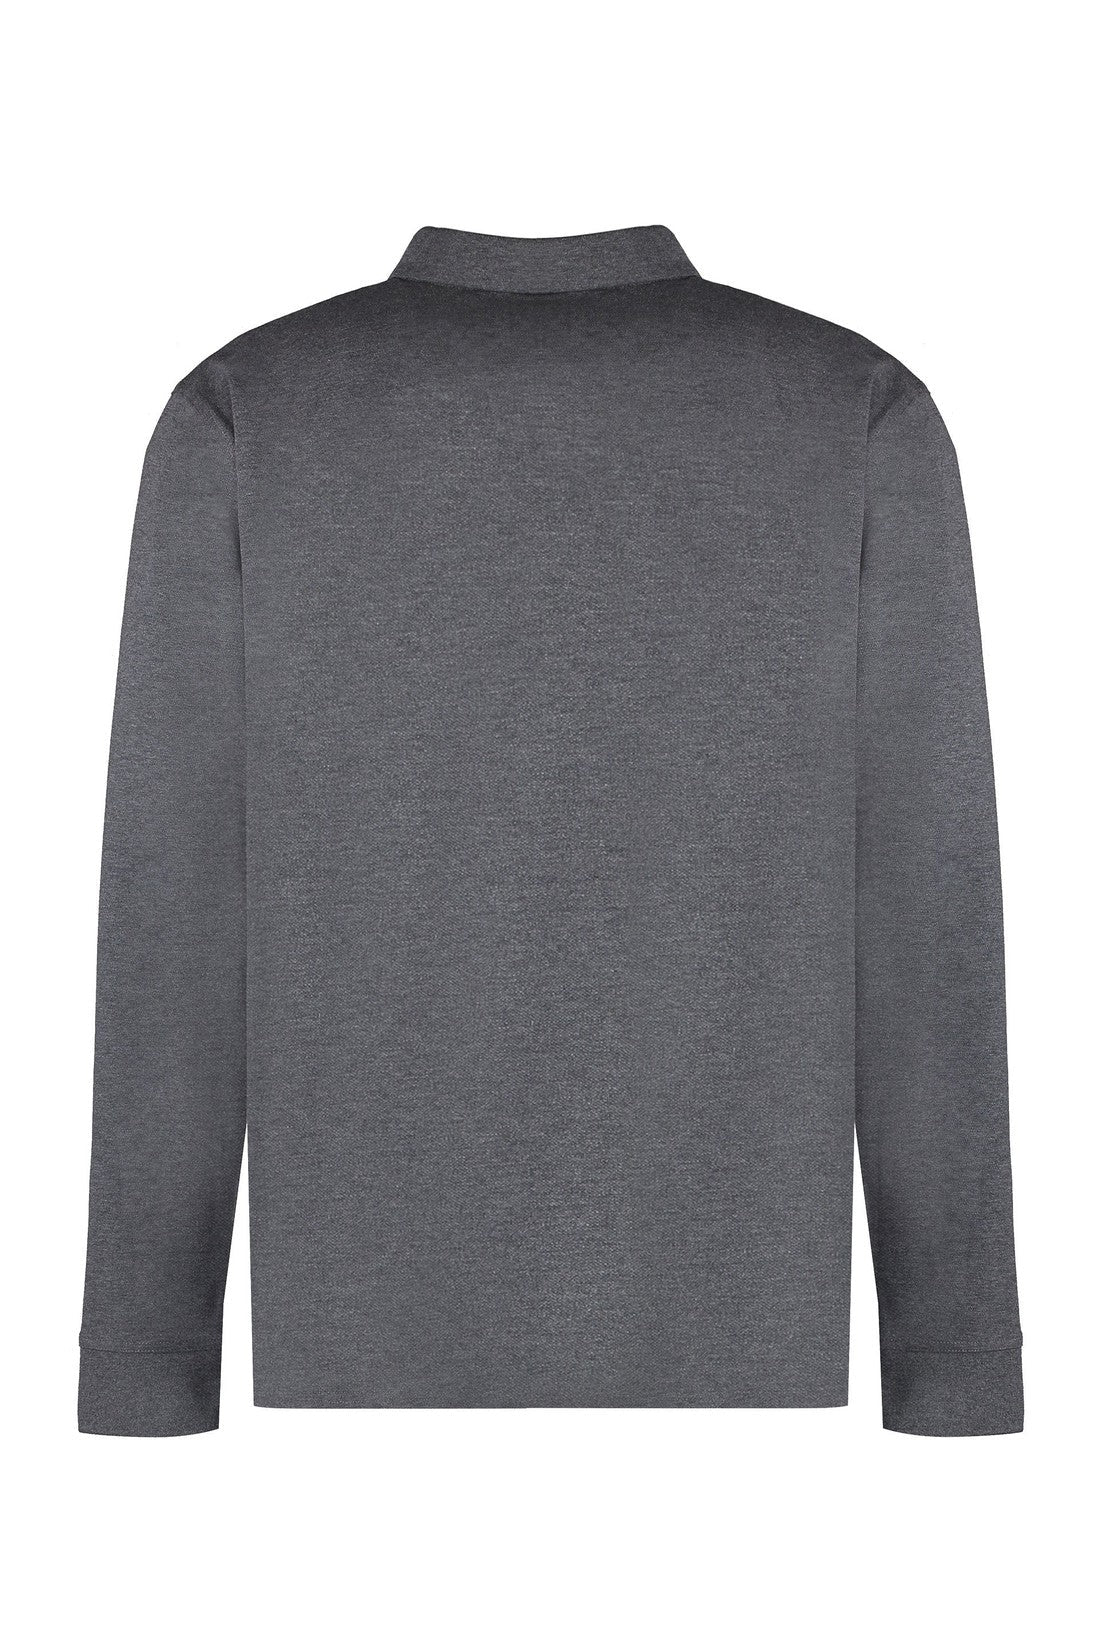 GANT-OUTLET-SALE-Long sleeve cotton polo shirt-ARCHIVIST